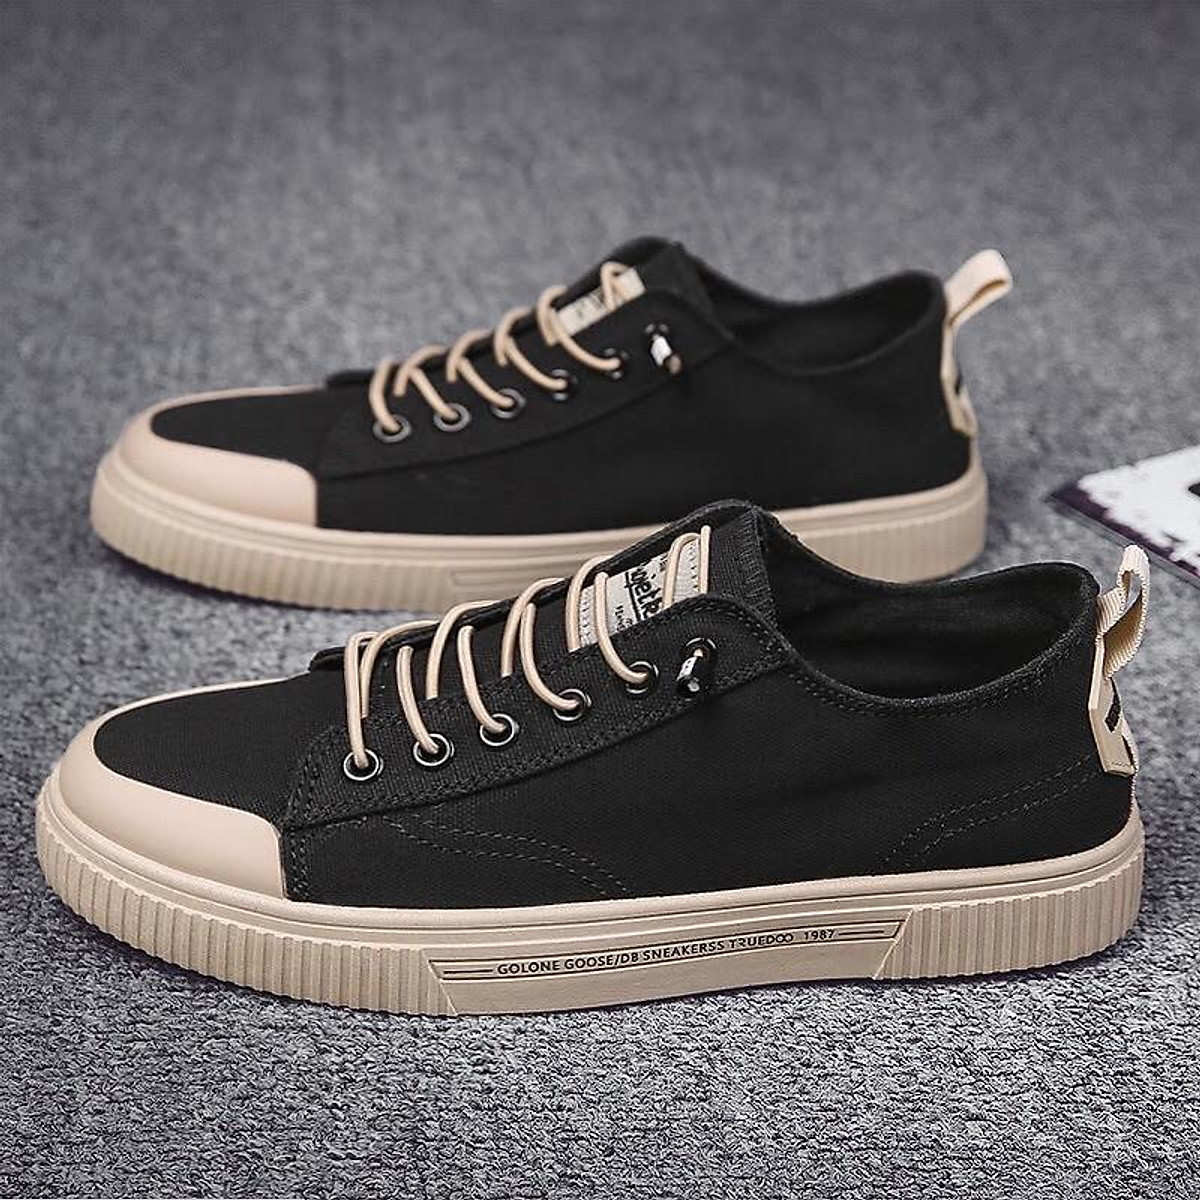  Giày Nam Sneaker Chất Liệu Vải Bò, Đế Cao Su Mềm Phong Cách Trẻ Trung Năng Động - Mã sản phẩm D87